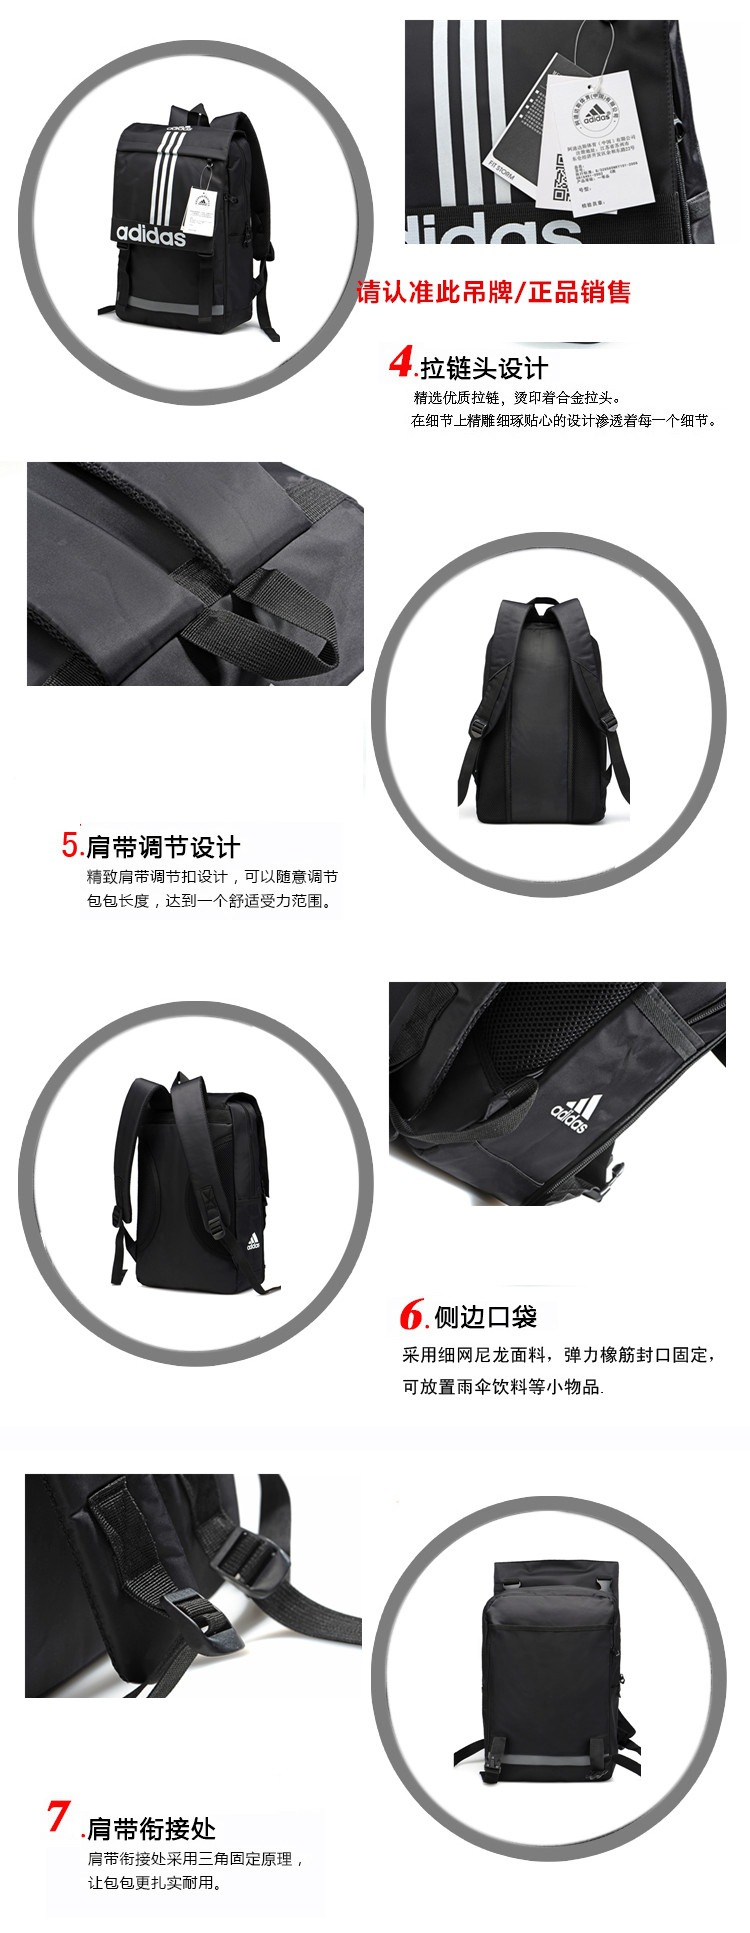 供应韩版三杆三叶时尚旅行包双肩电脑包定制OEMfz61201002